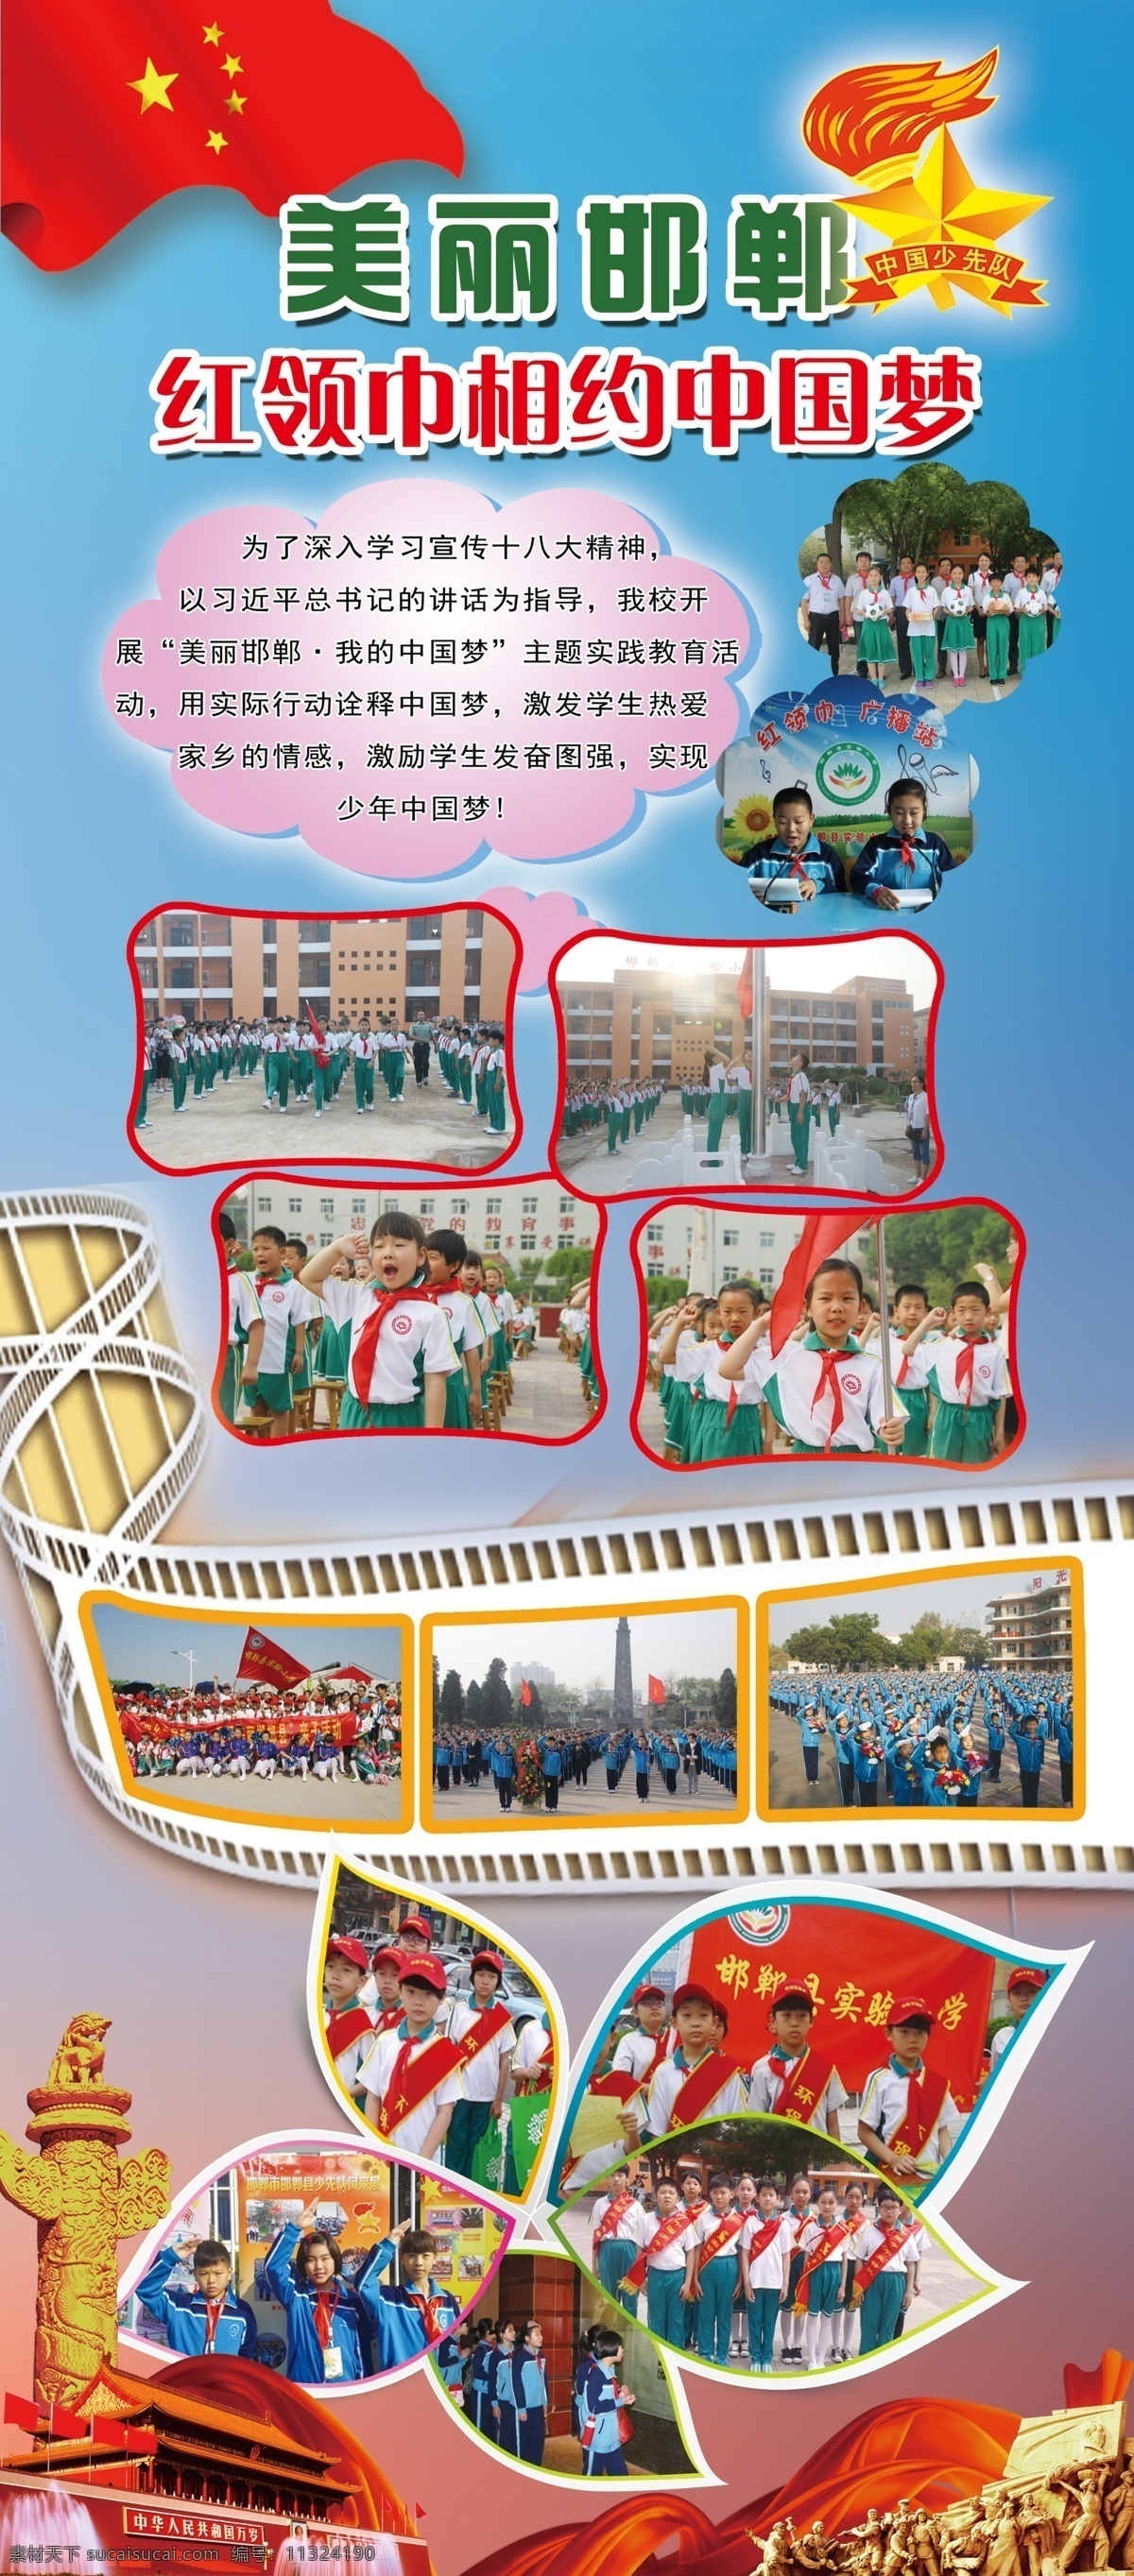 红领巾 相约 中国 梦 学校用展板 蓝色背景 少先队照片 花瓣矢量图 照片剪影